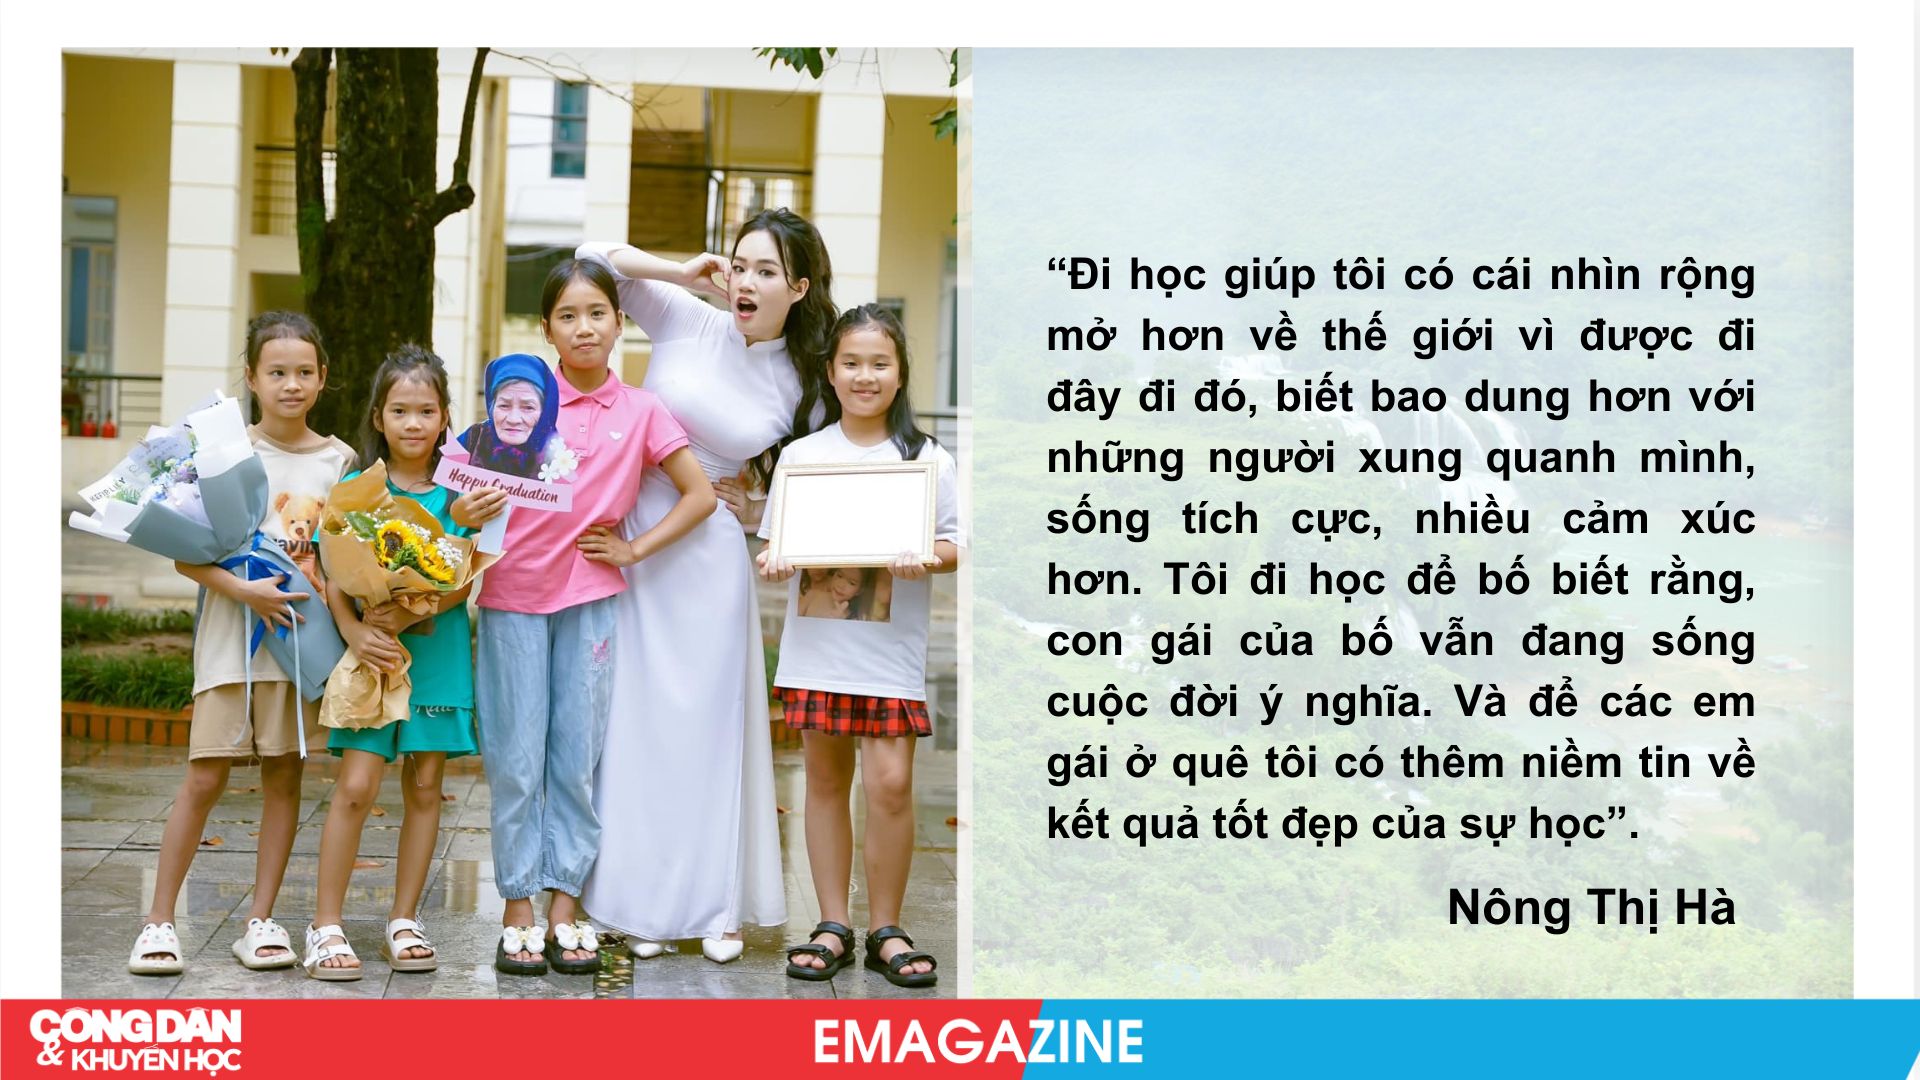 Nông Thị Hà: Tôi gắng học giỏi để các em gái quê tôi tin vào học hành- Ảnh 11.